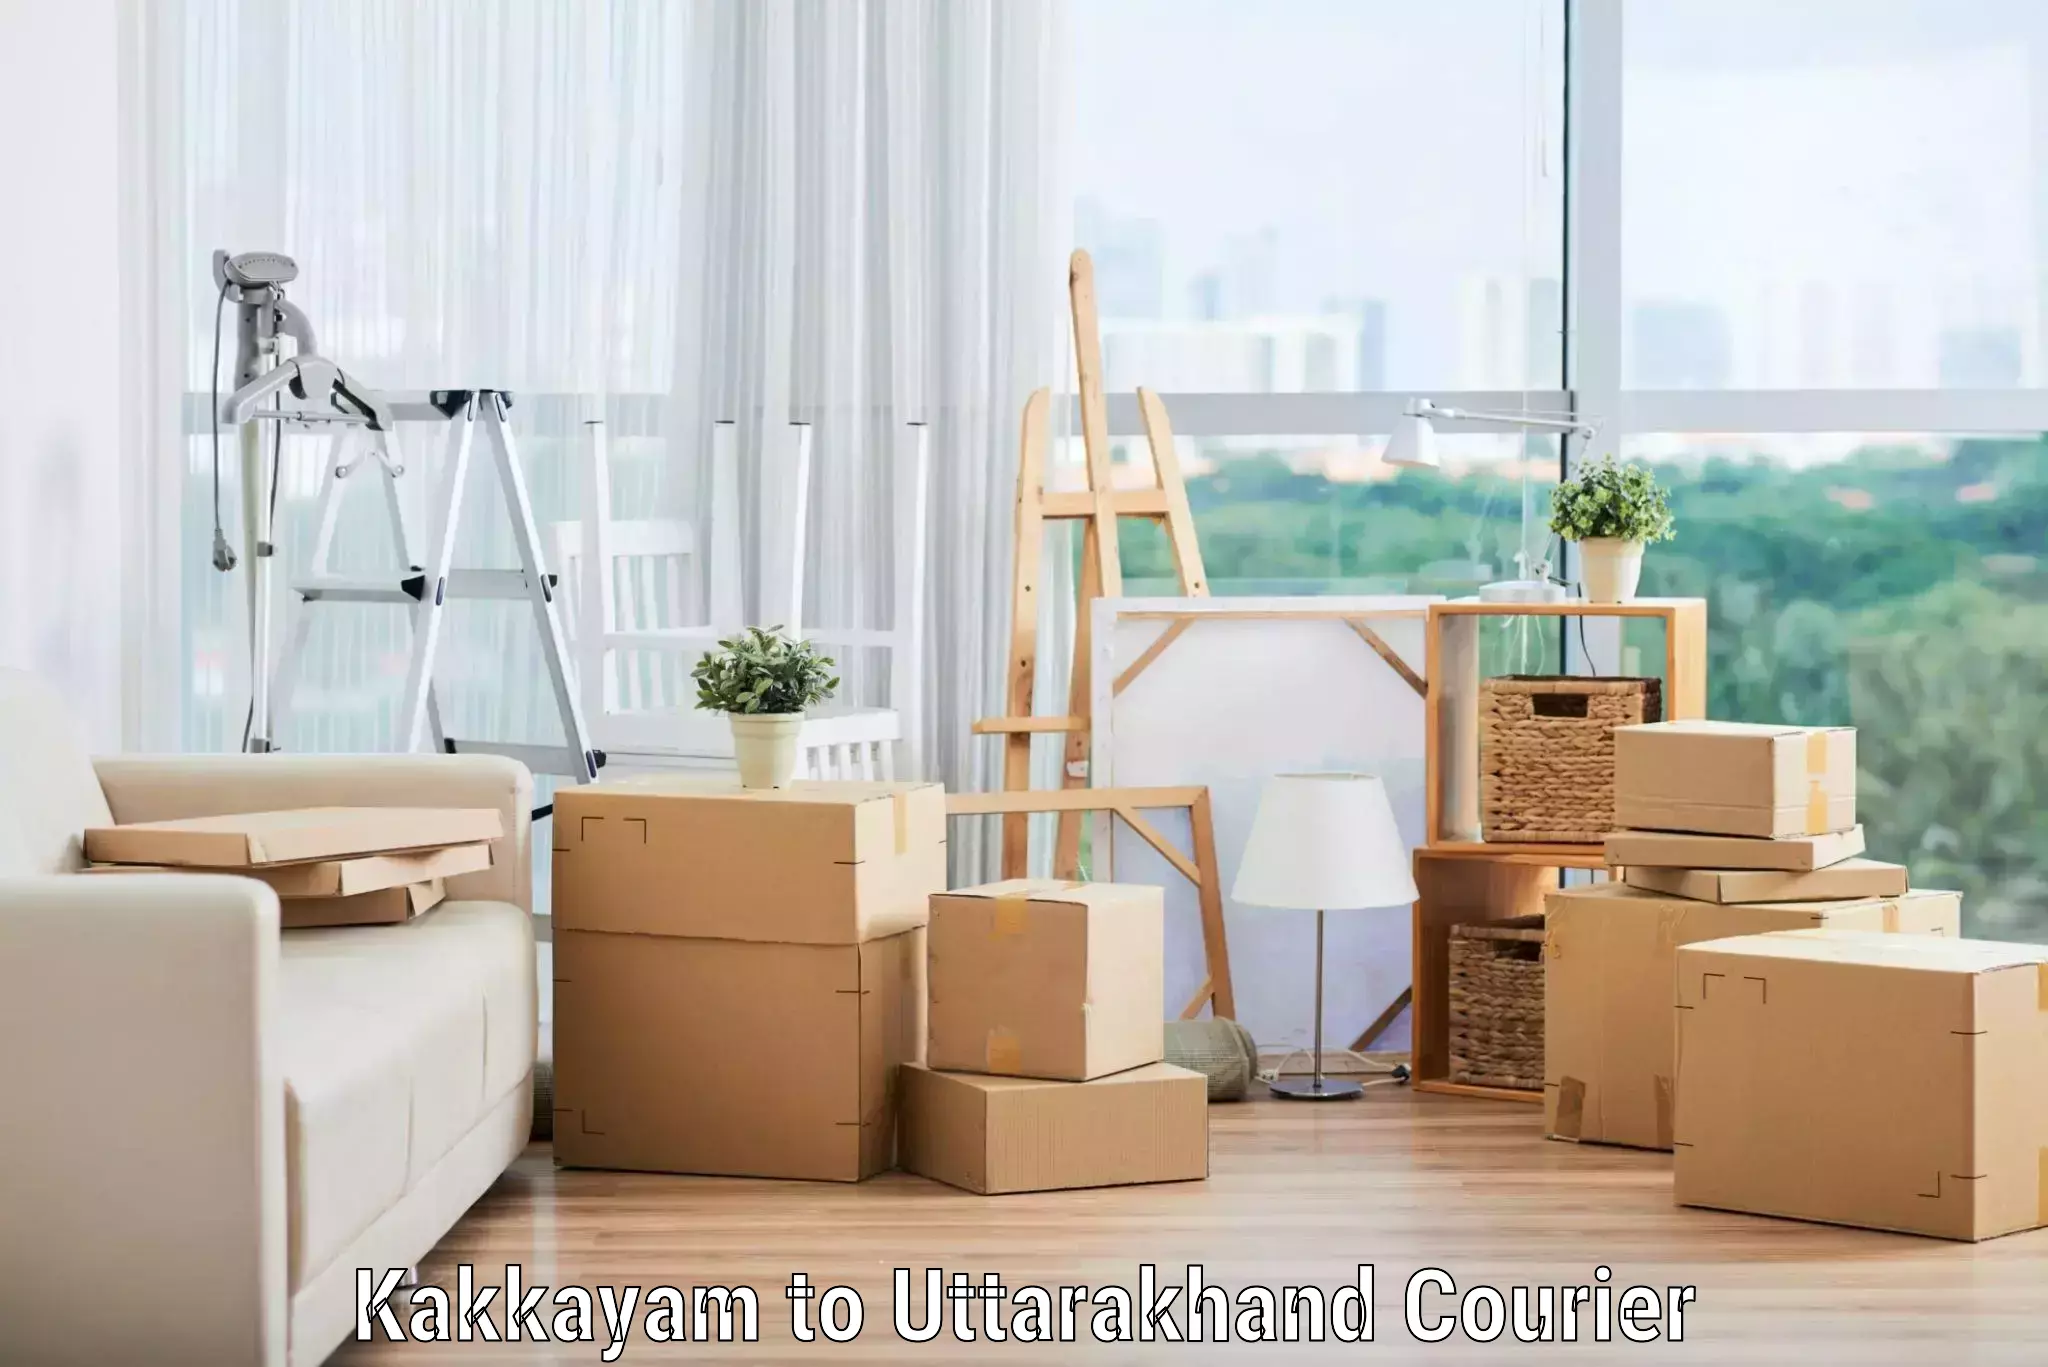 Professional moving company Kakkayam to Rishikesh